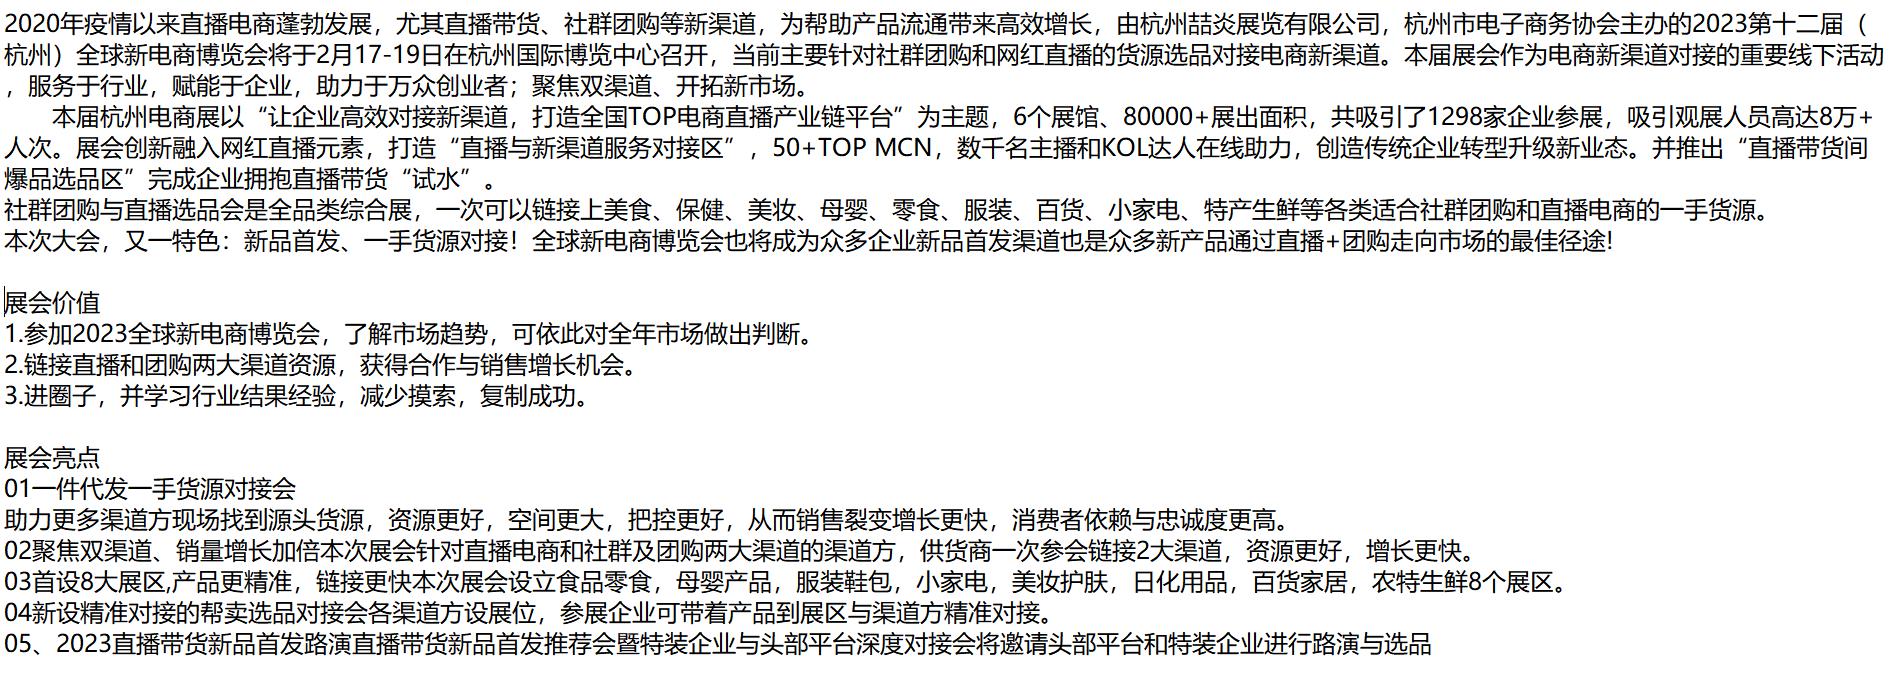 2023第十二届杭州网红直播电商及社群团购博览会即将召开